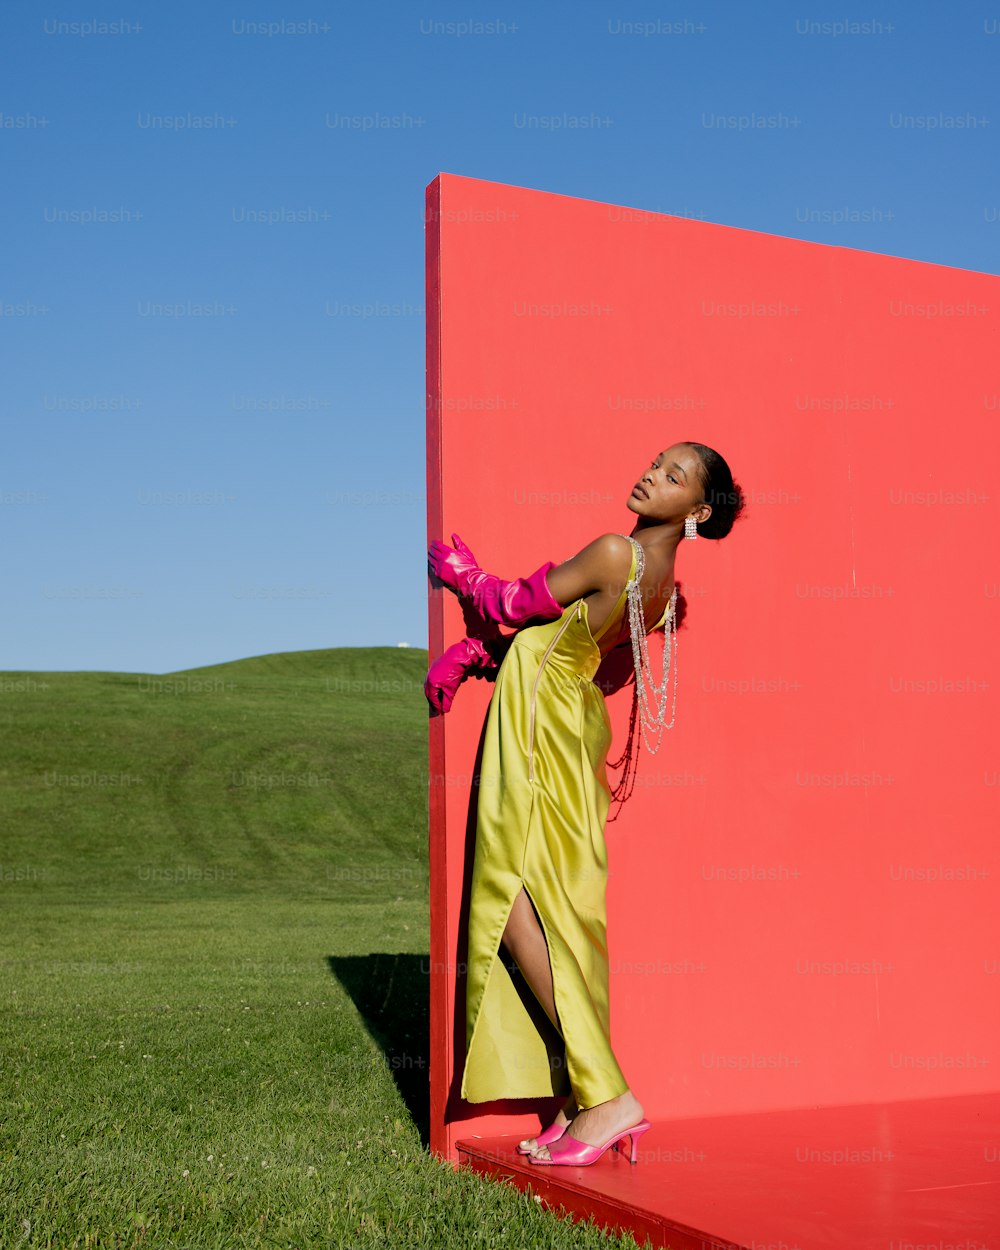 Una donna in un vestito giallo appoggiata a un muro rosso